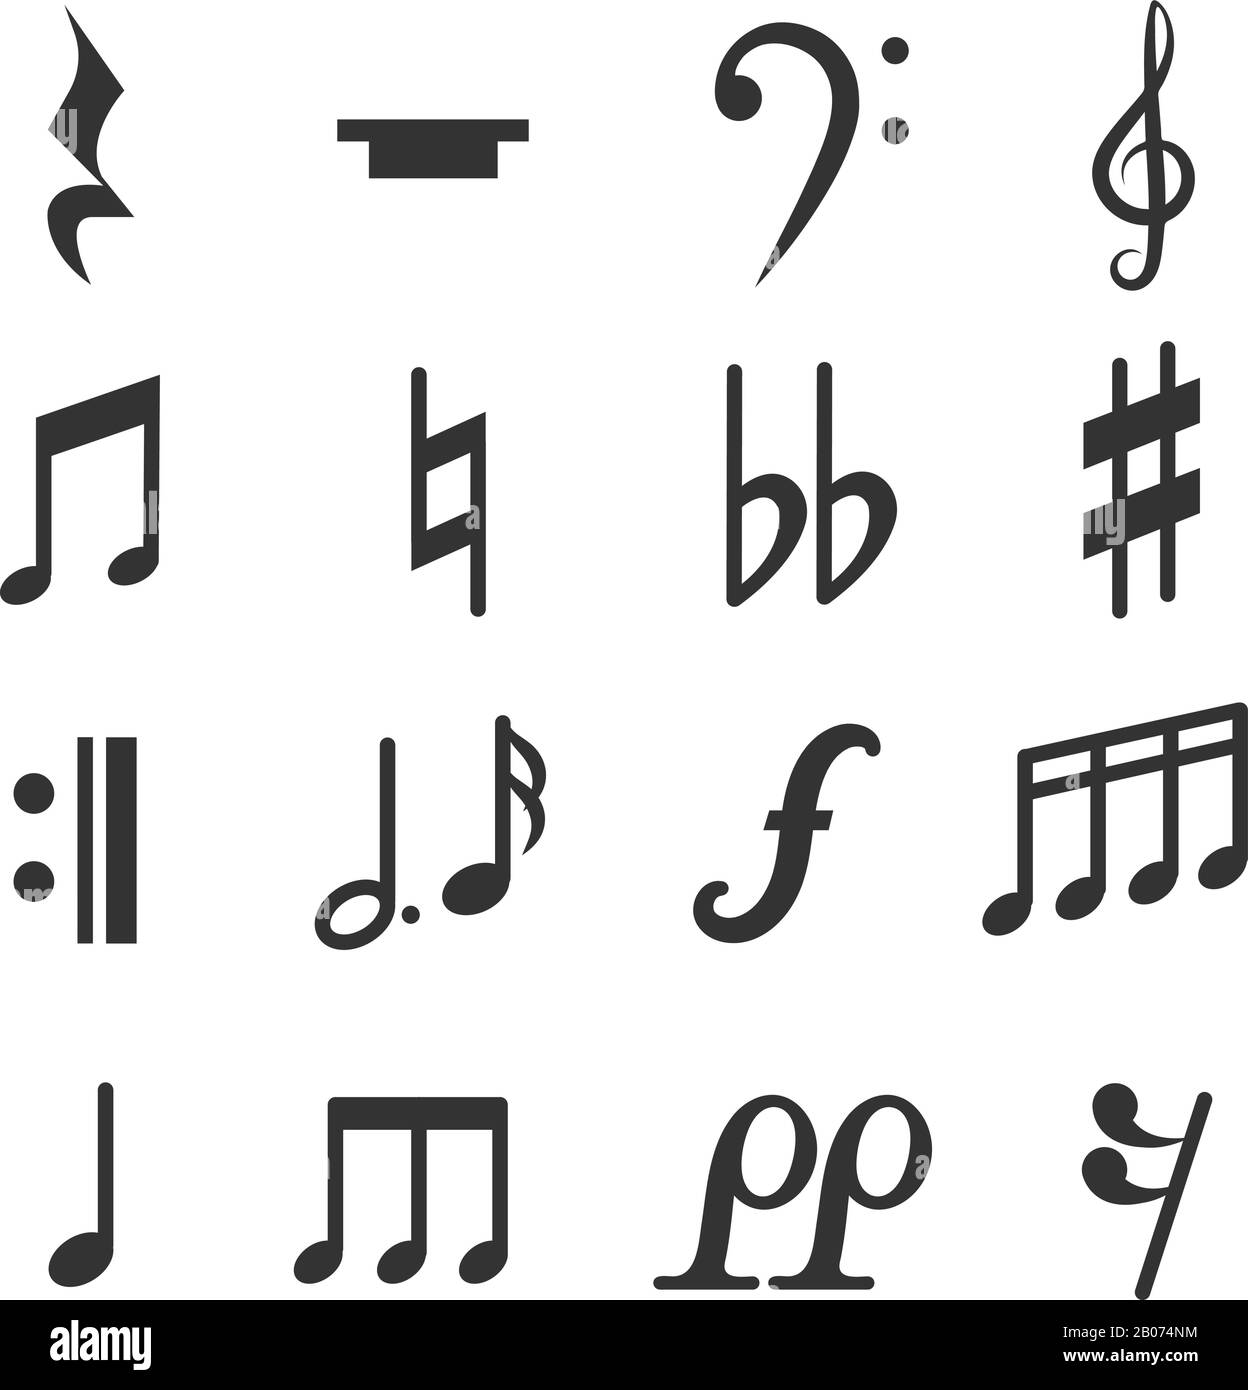 Jeu de symboles vectoriels pour notes musicales. Illustration de Diez et de signes musicaux plats Illustration de Vecteur